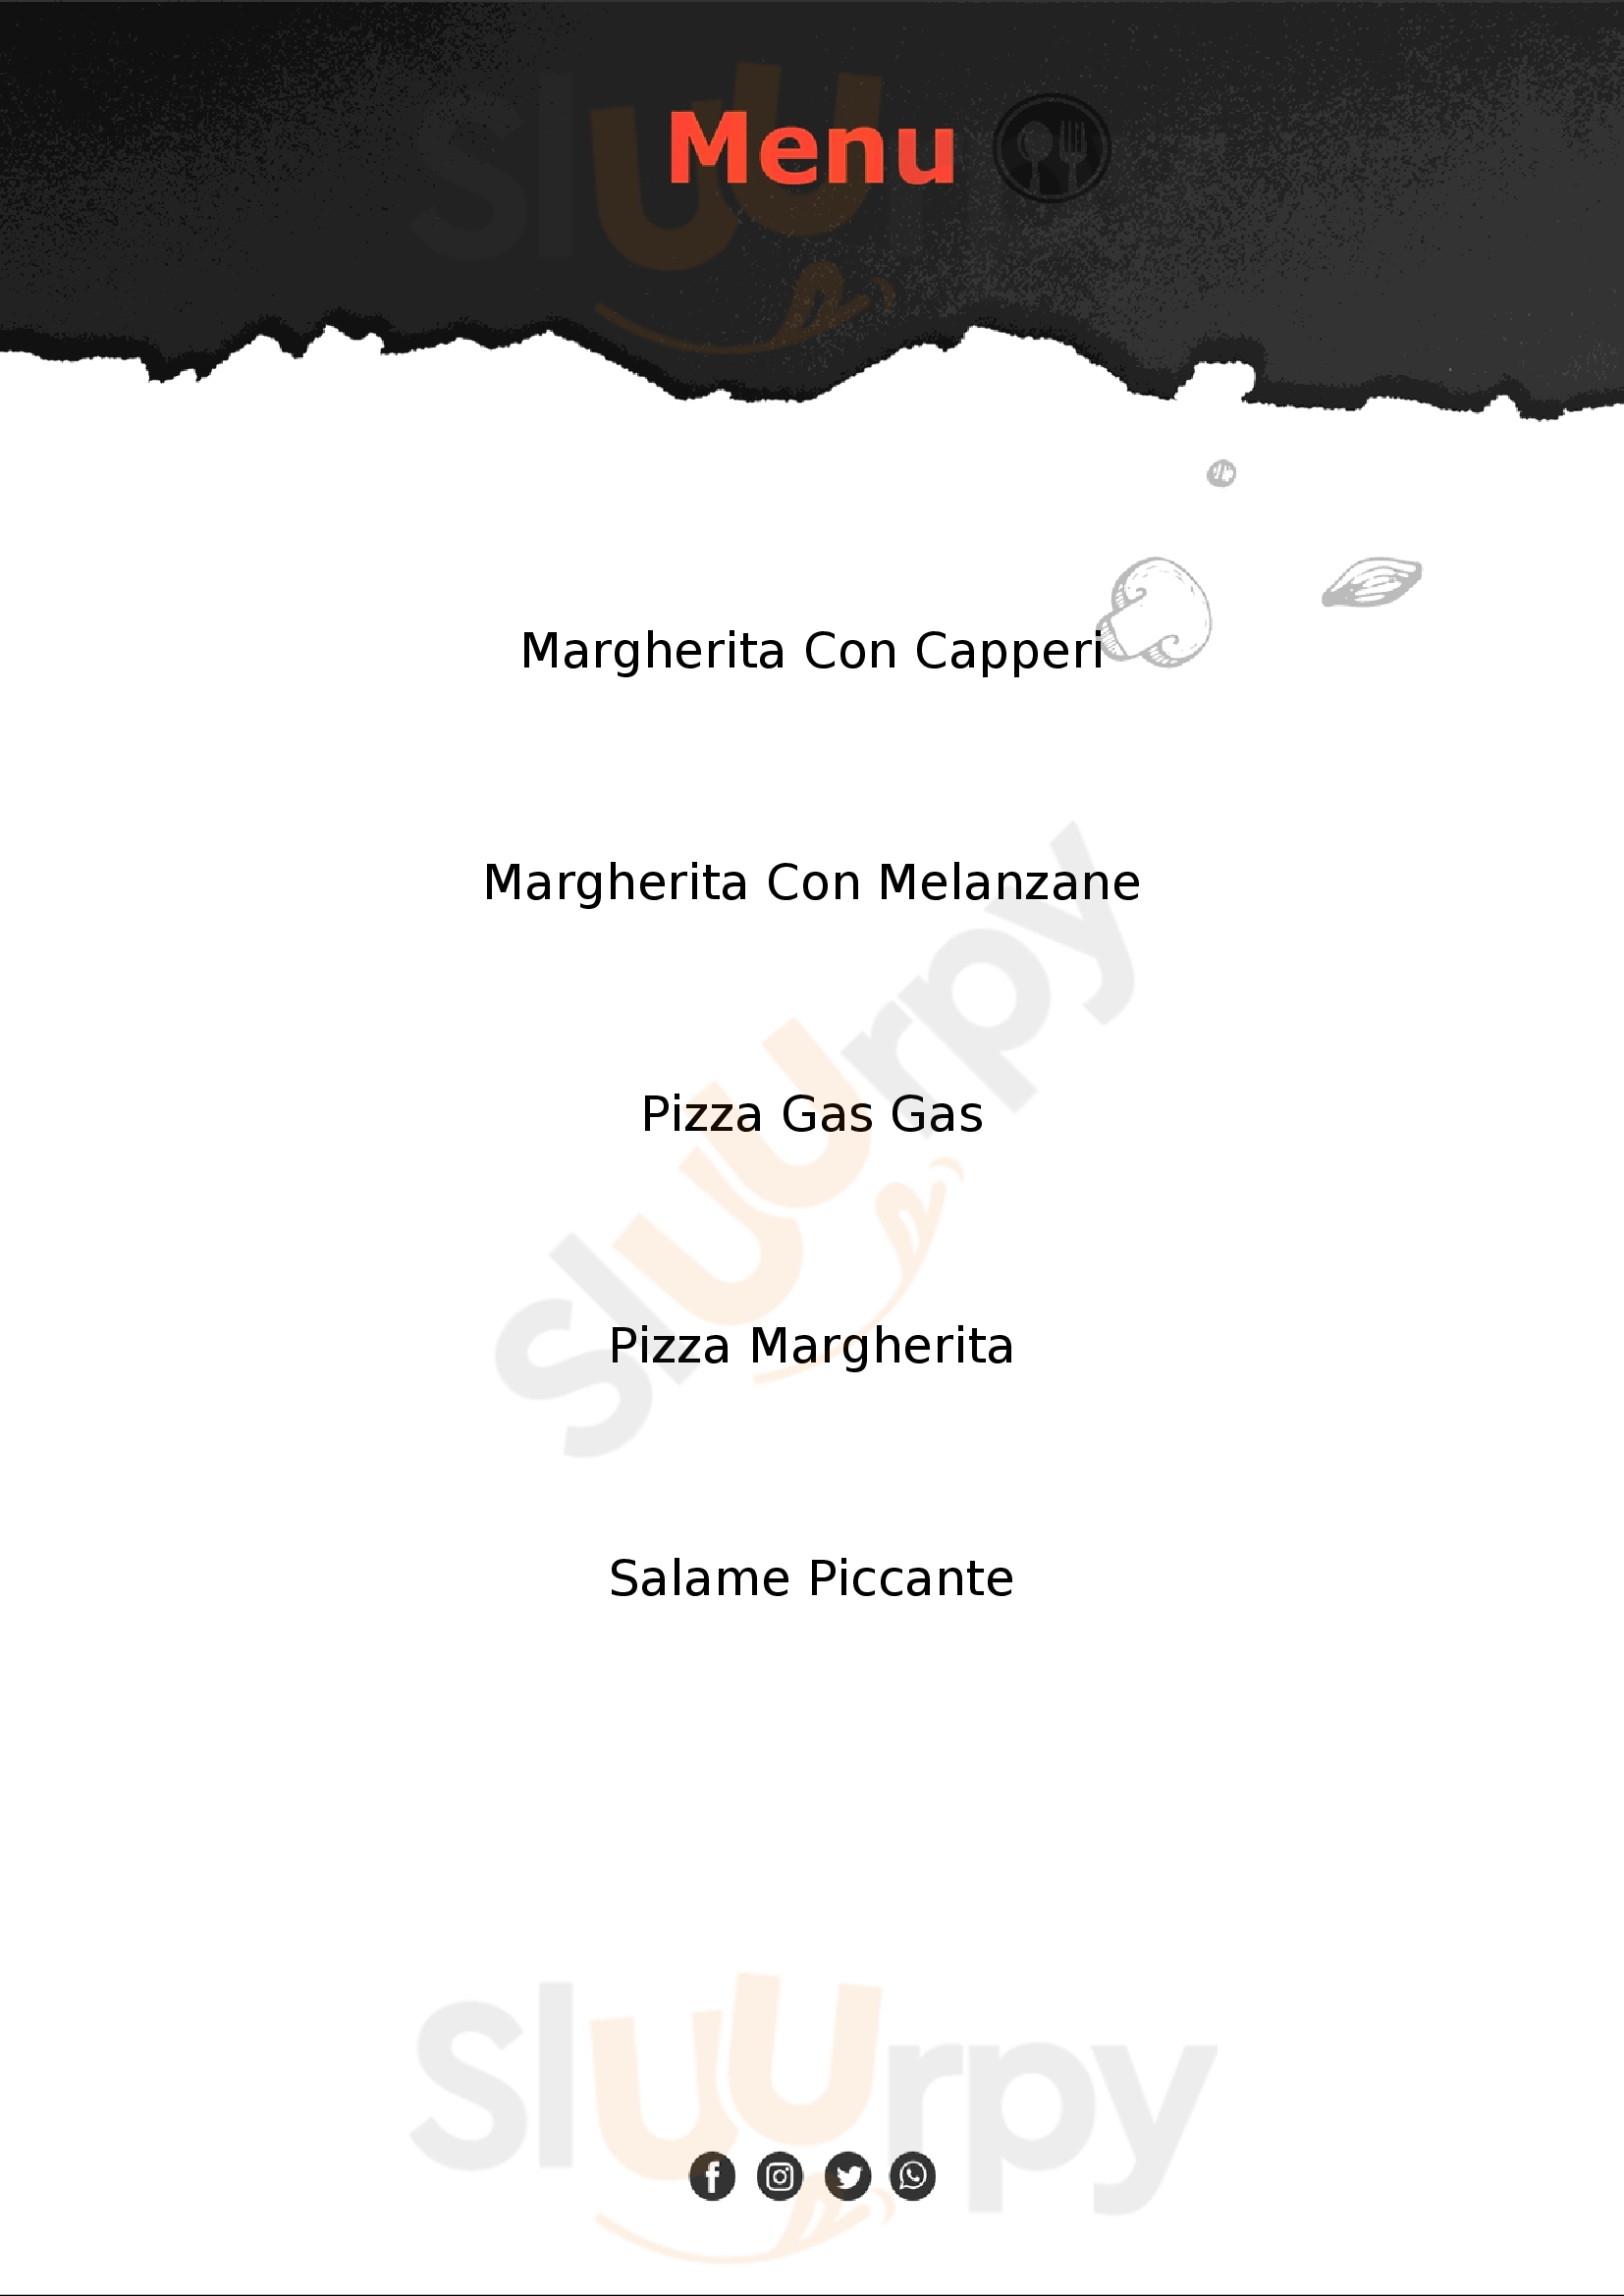 360gradi Pizzeria Imola menù 1 pagina